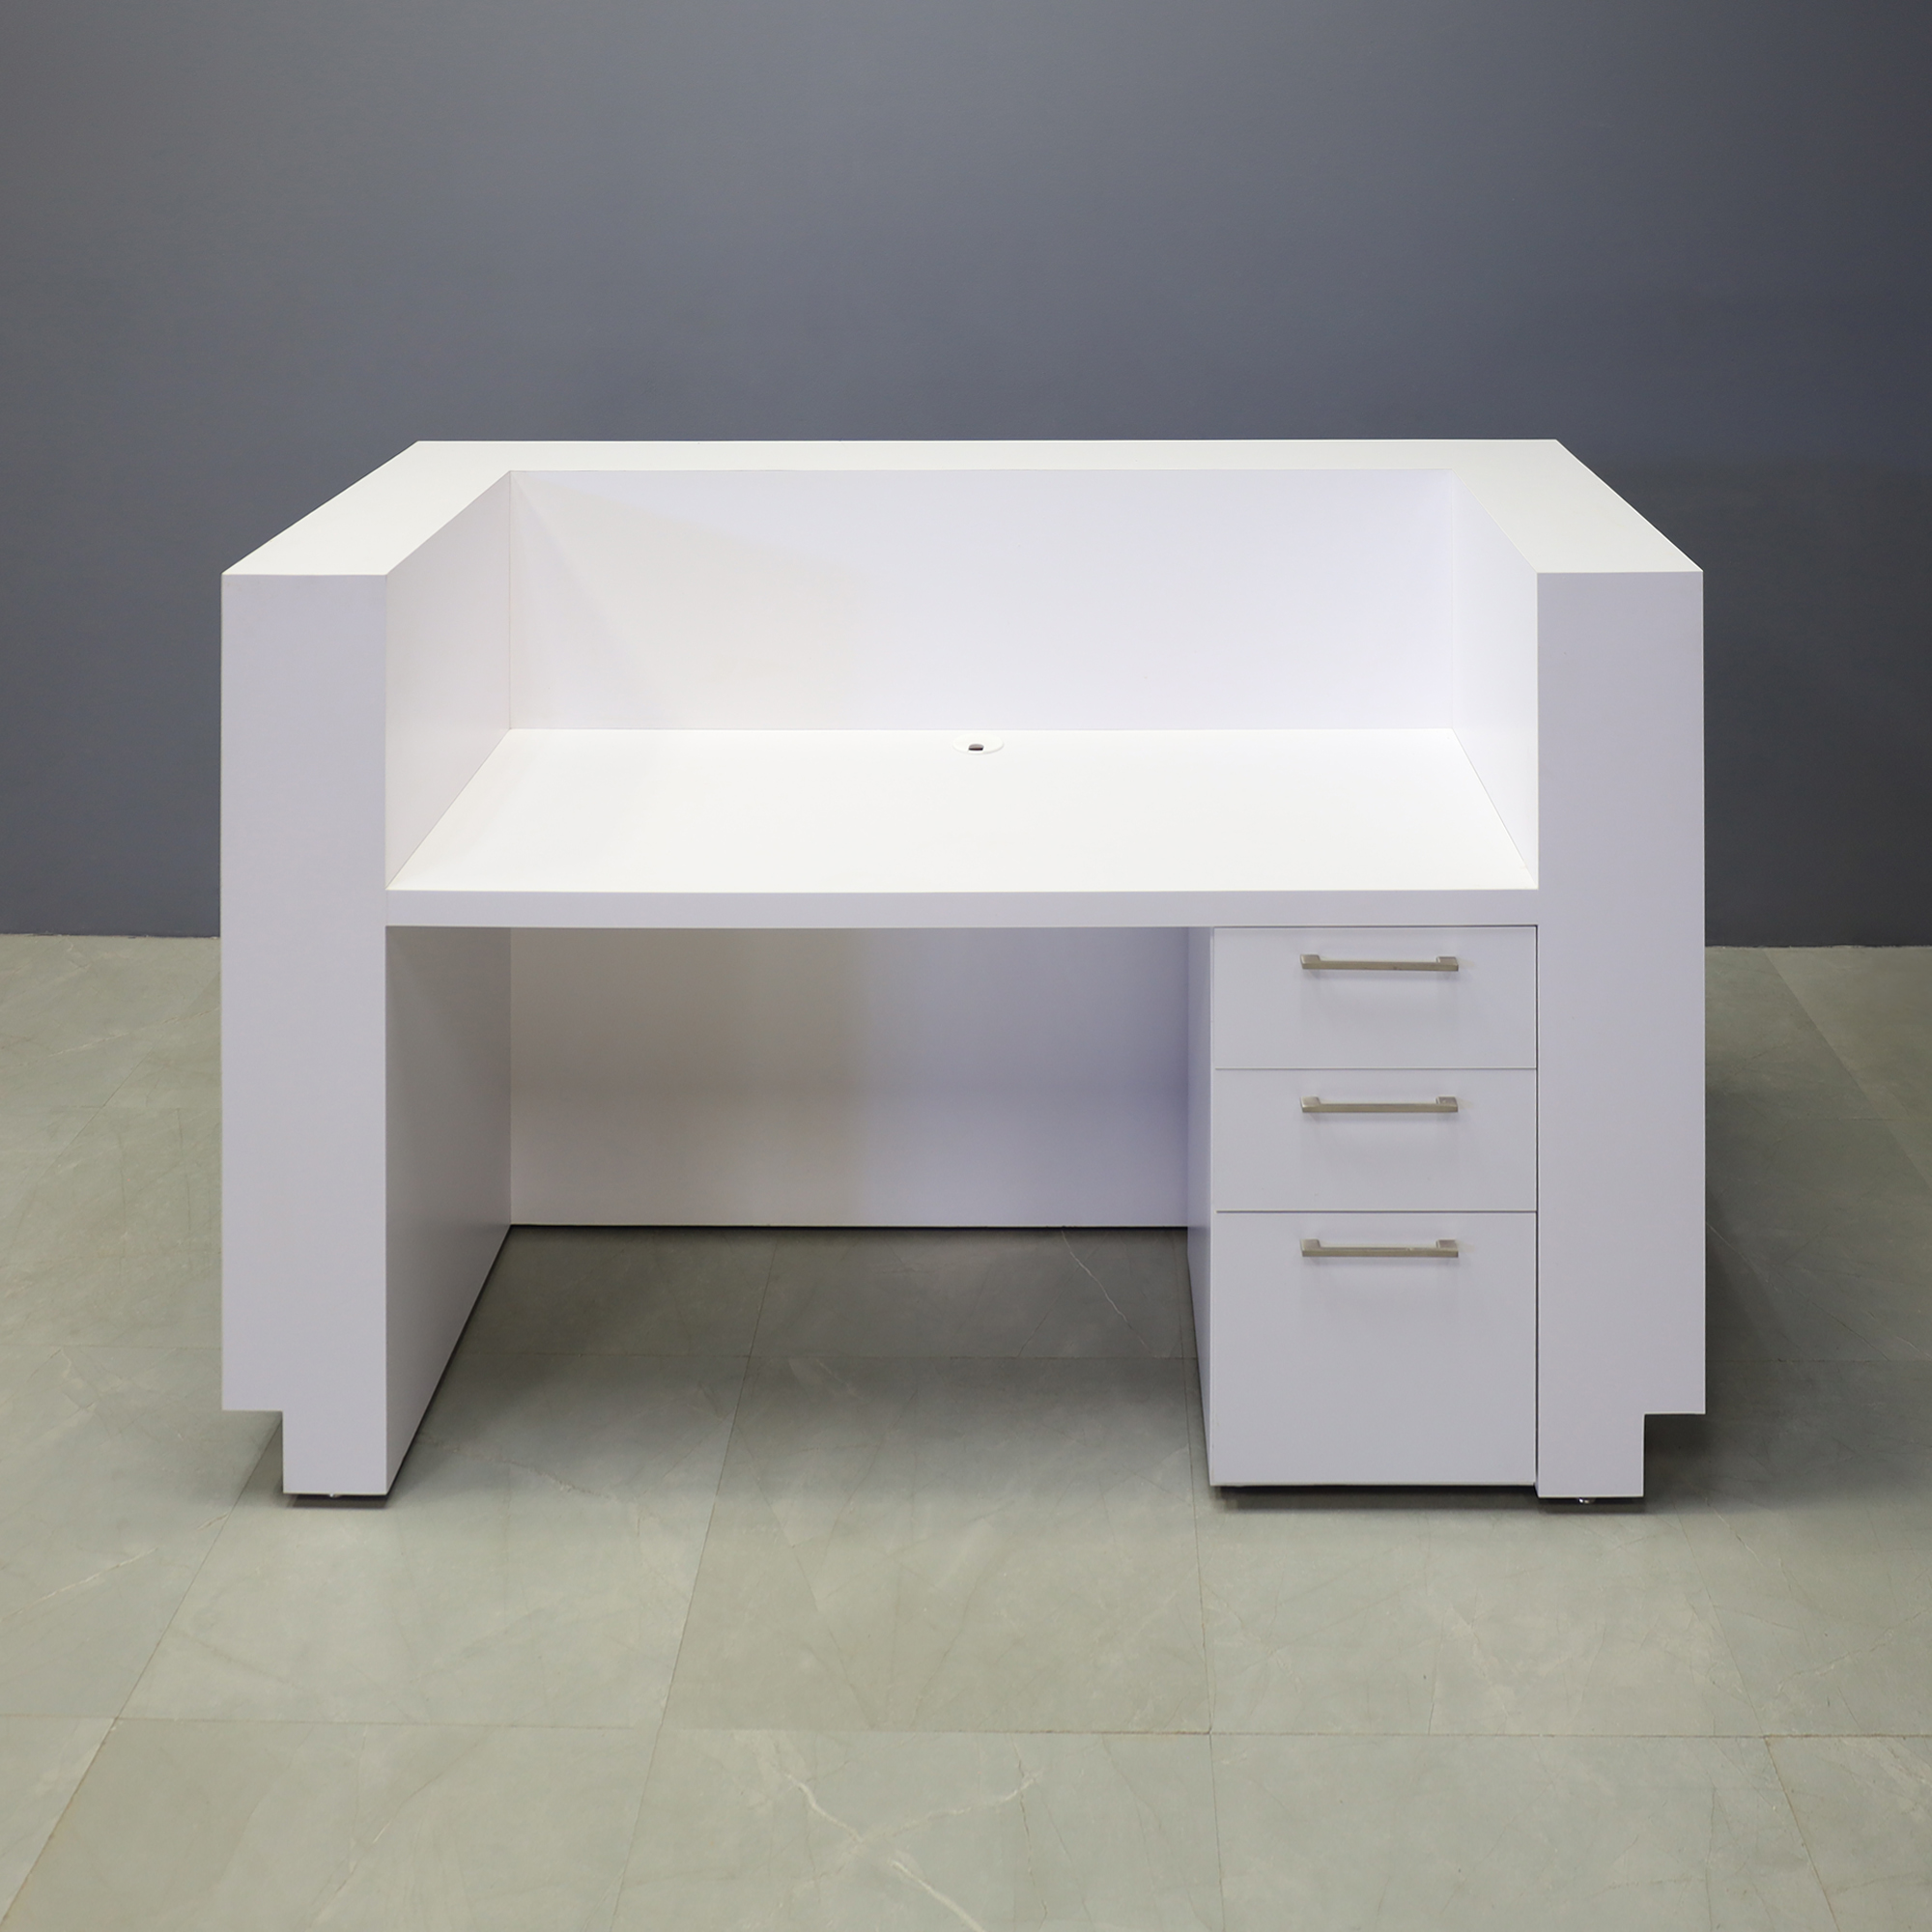 72-inch Manhattan U-Shape Reception Desk in white matte laminate main desk, 1/2